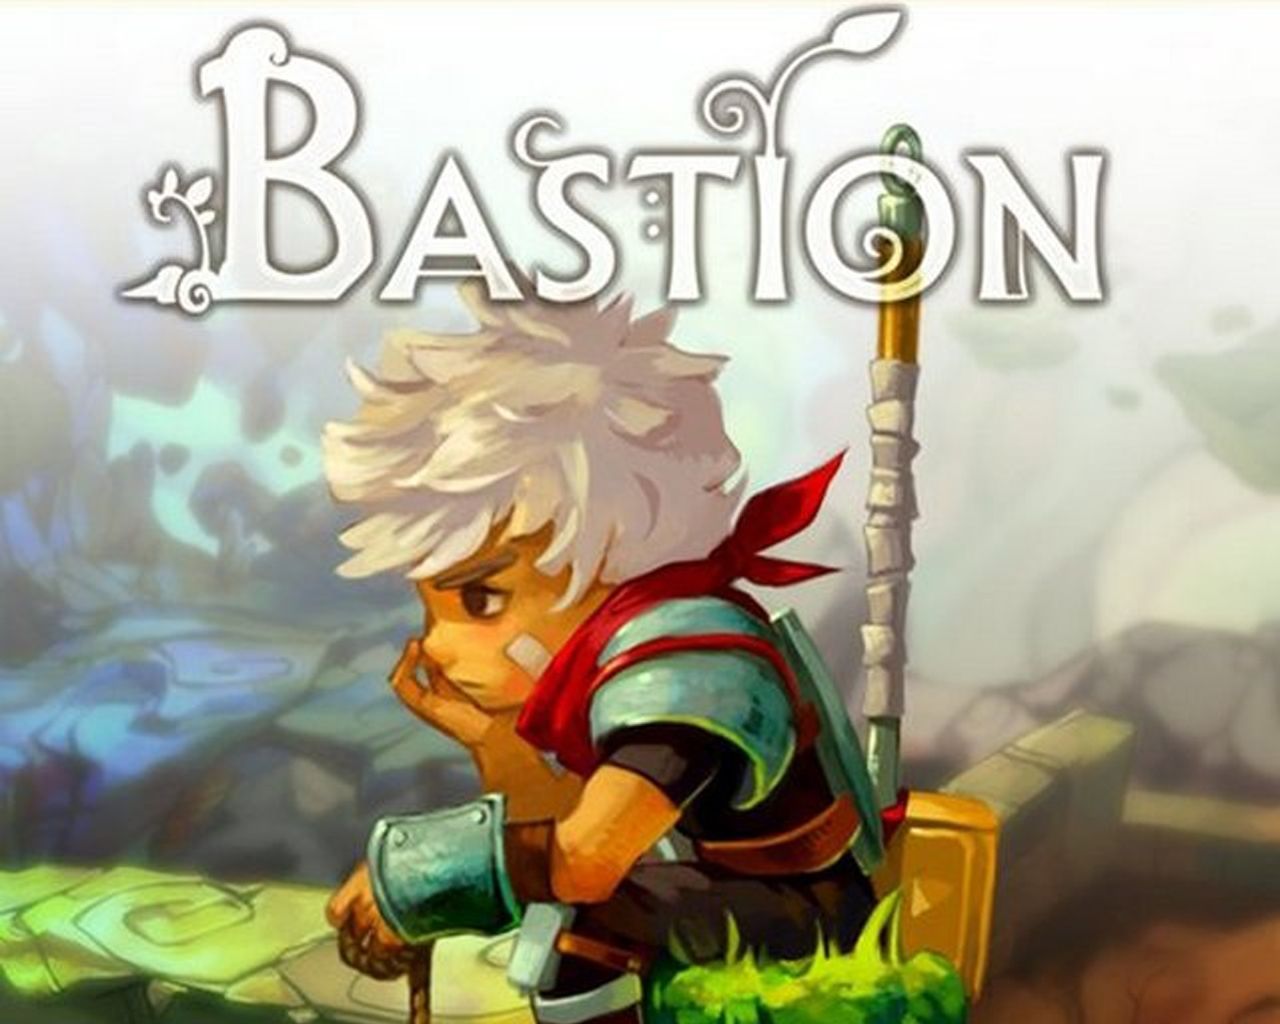 Bastion arriva su Xbox One a Dicembre